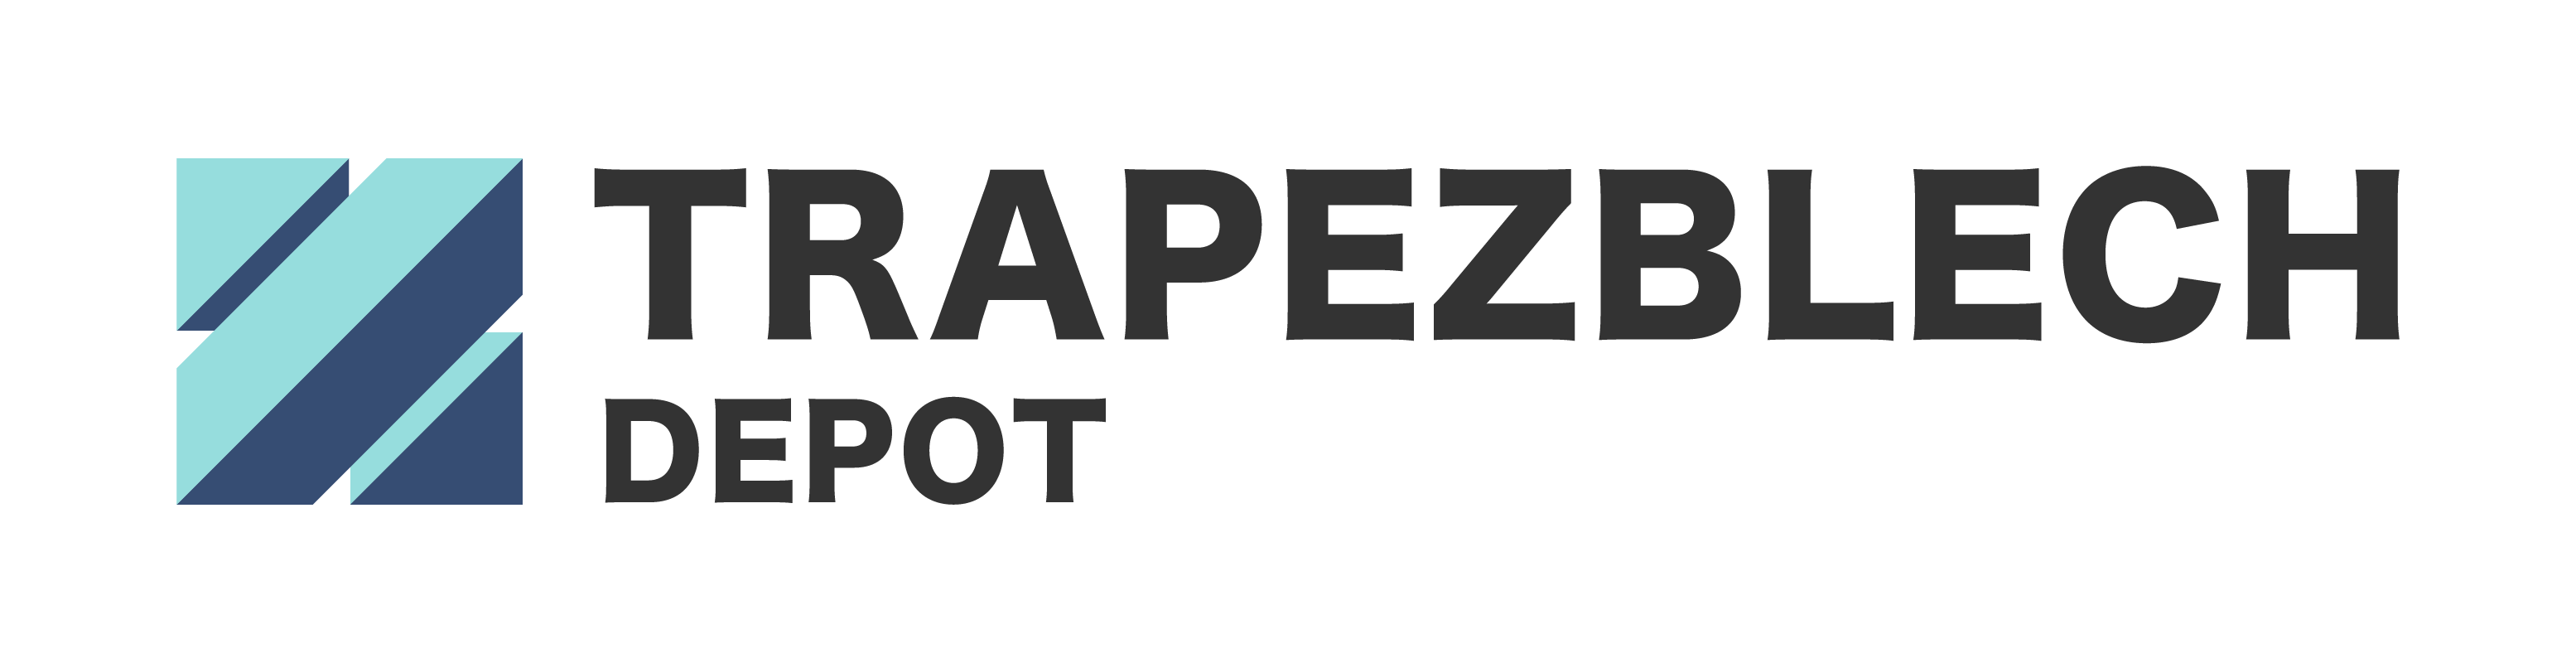 trapezblechdepot logo 05